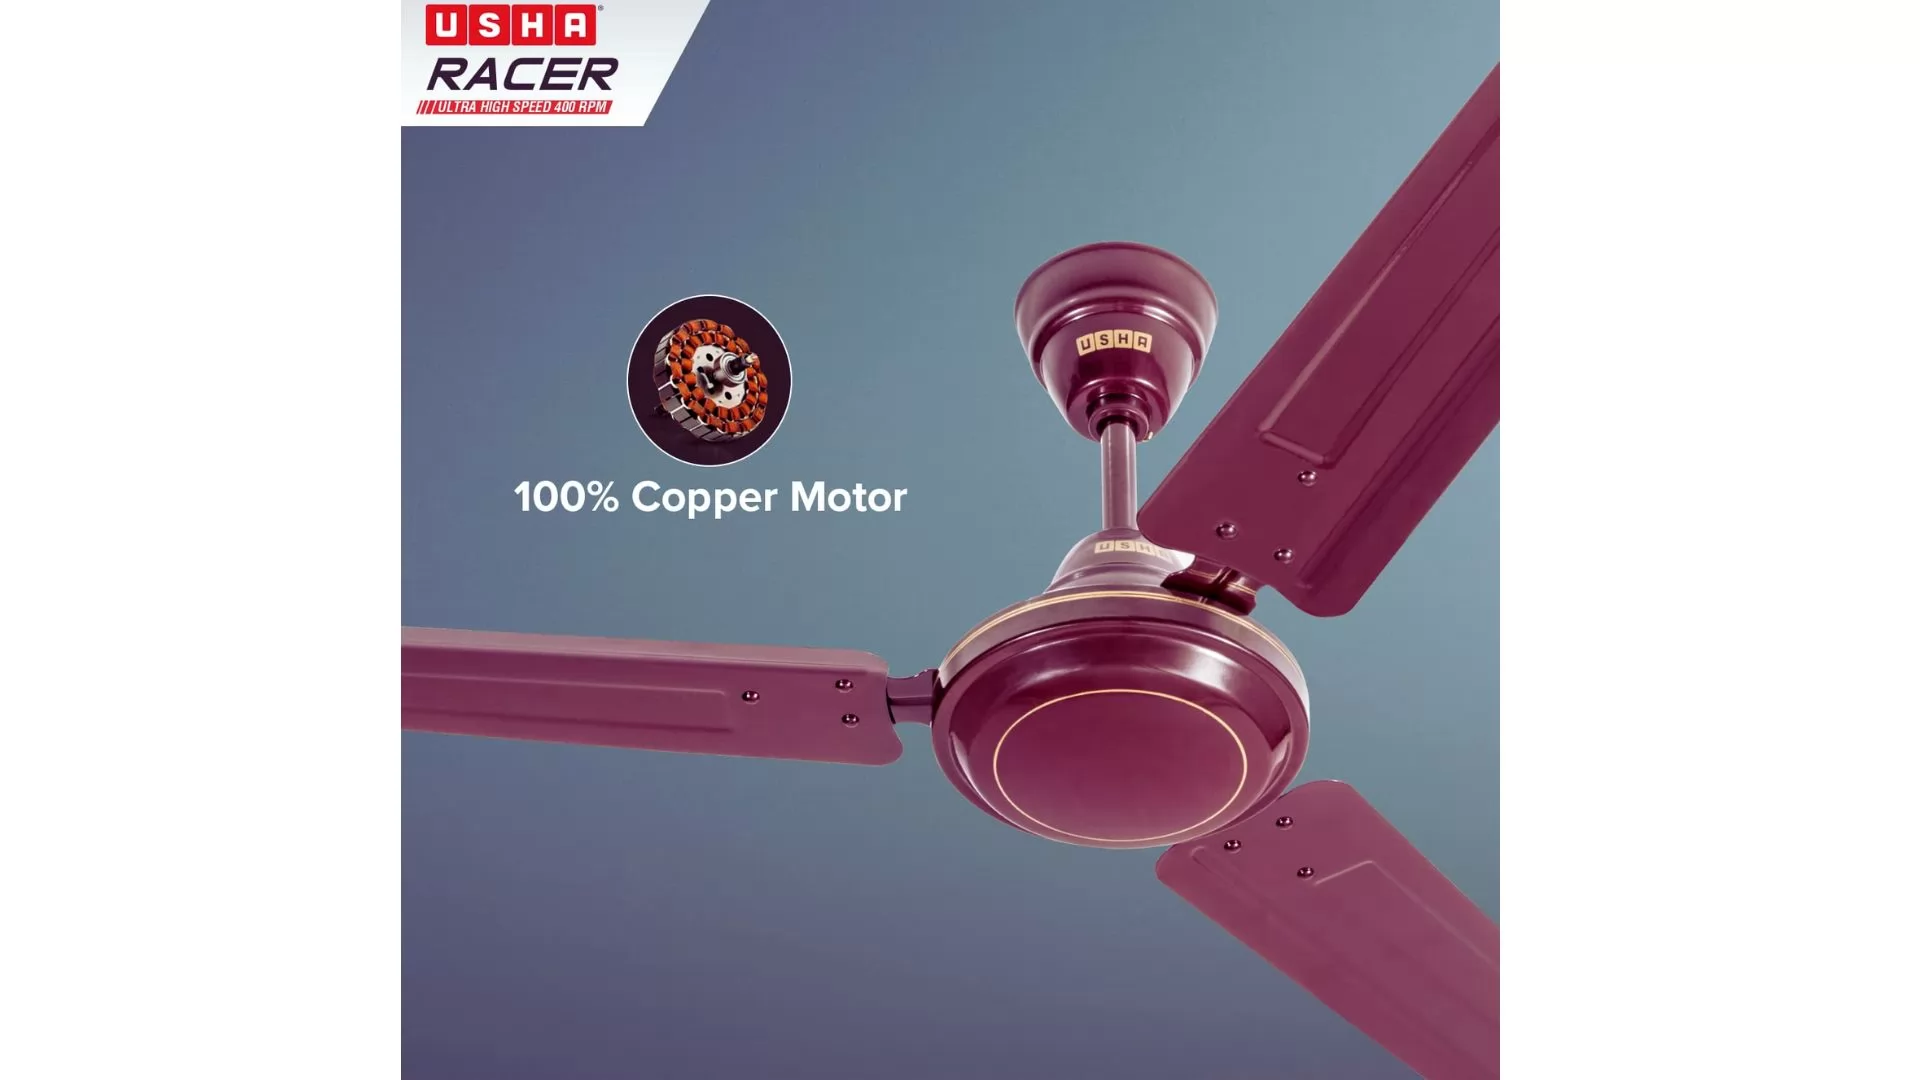 Usha Racer ceiling fan